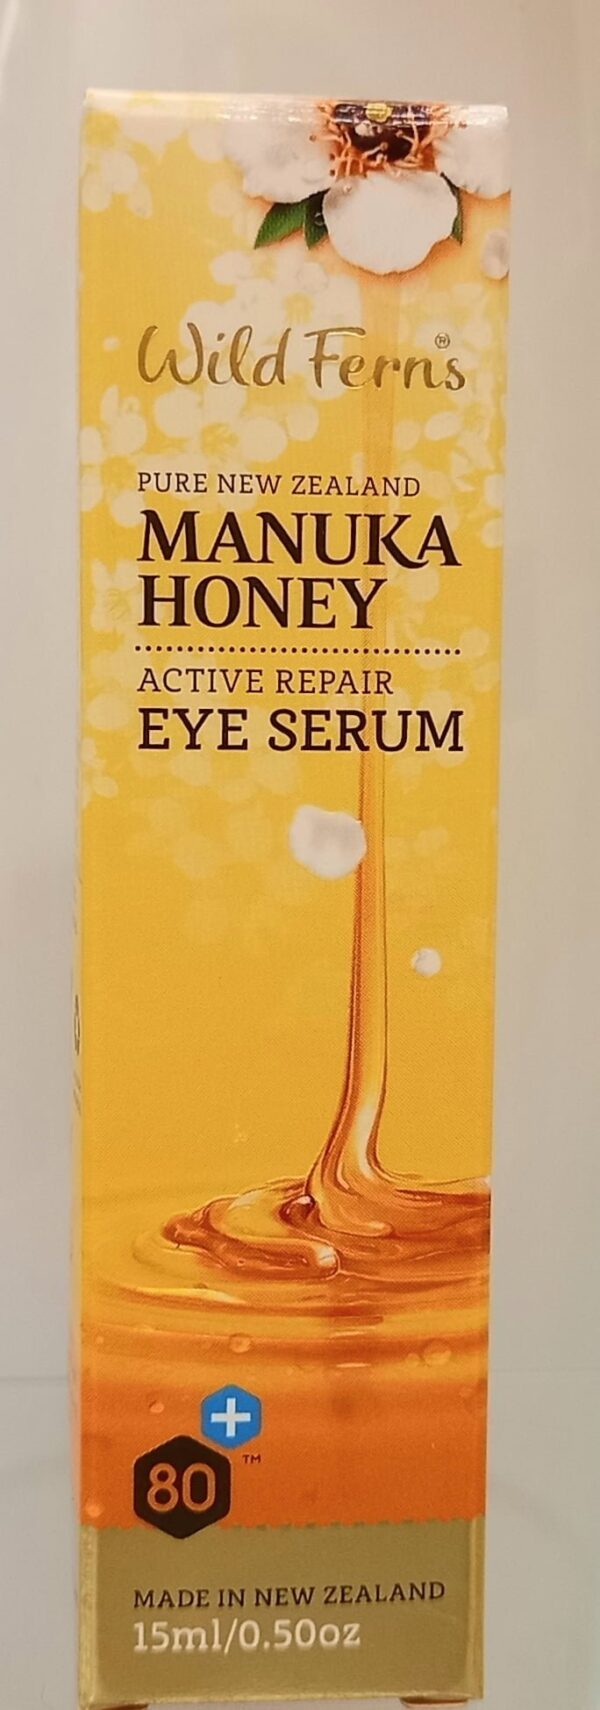 Manuka Honey - Eye Serum